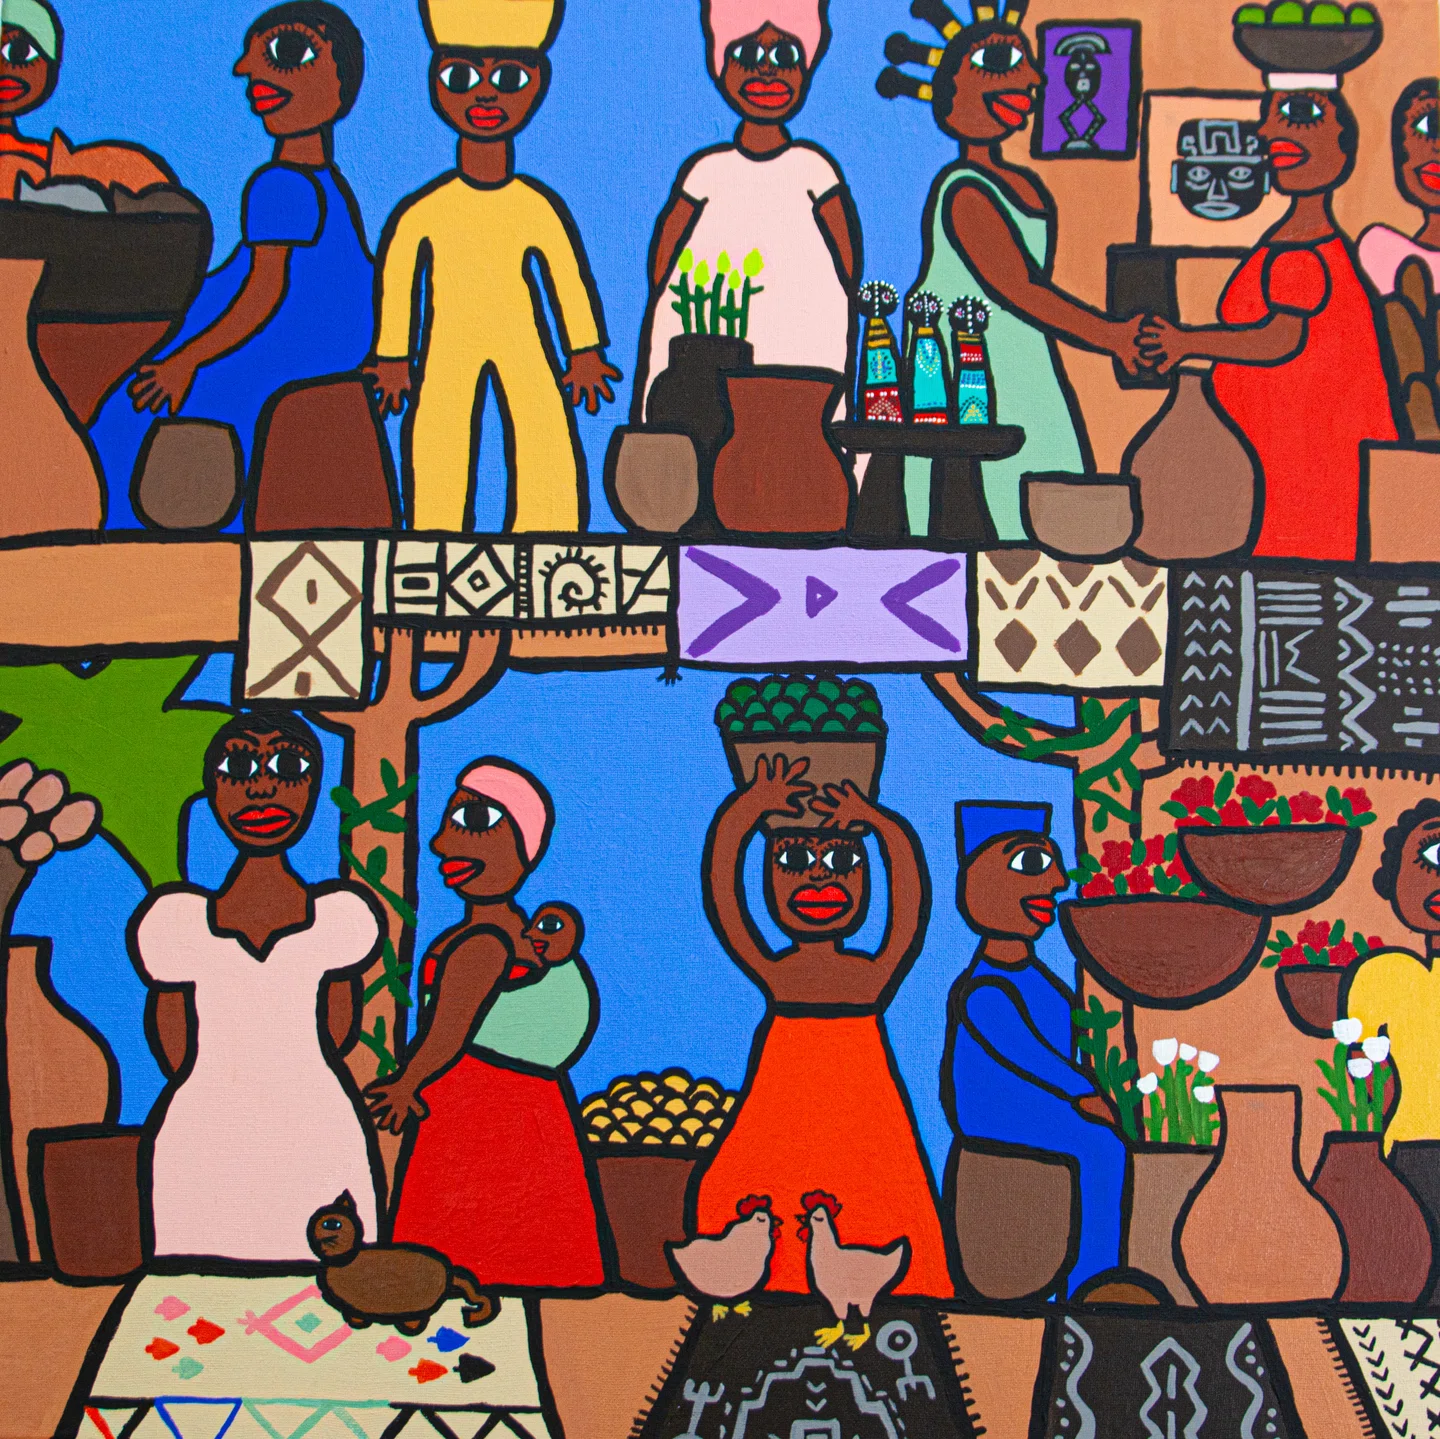 As obras de arte inspiradas no folk de Kenya Parry Josiah criam um espaço alegre para mulheres negras